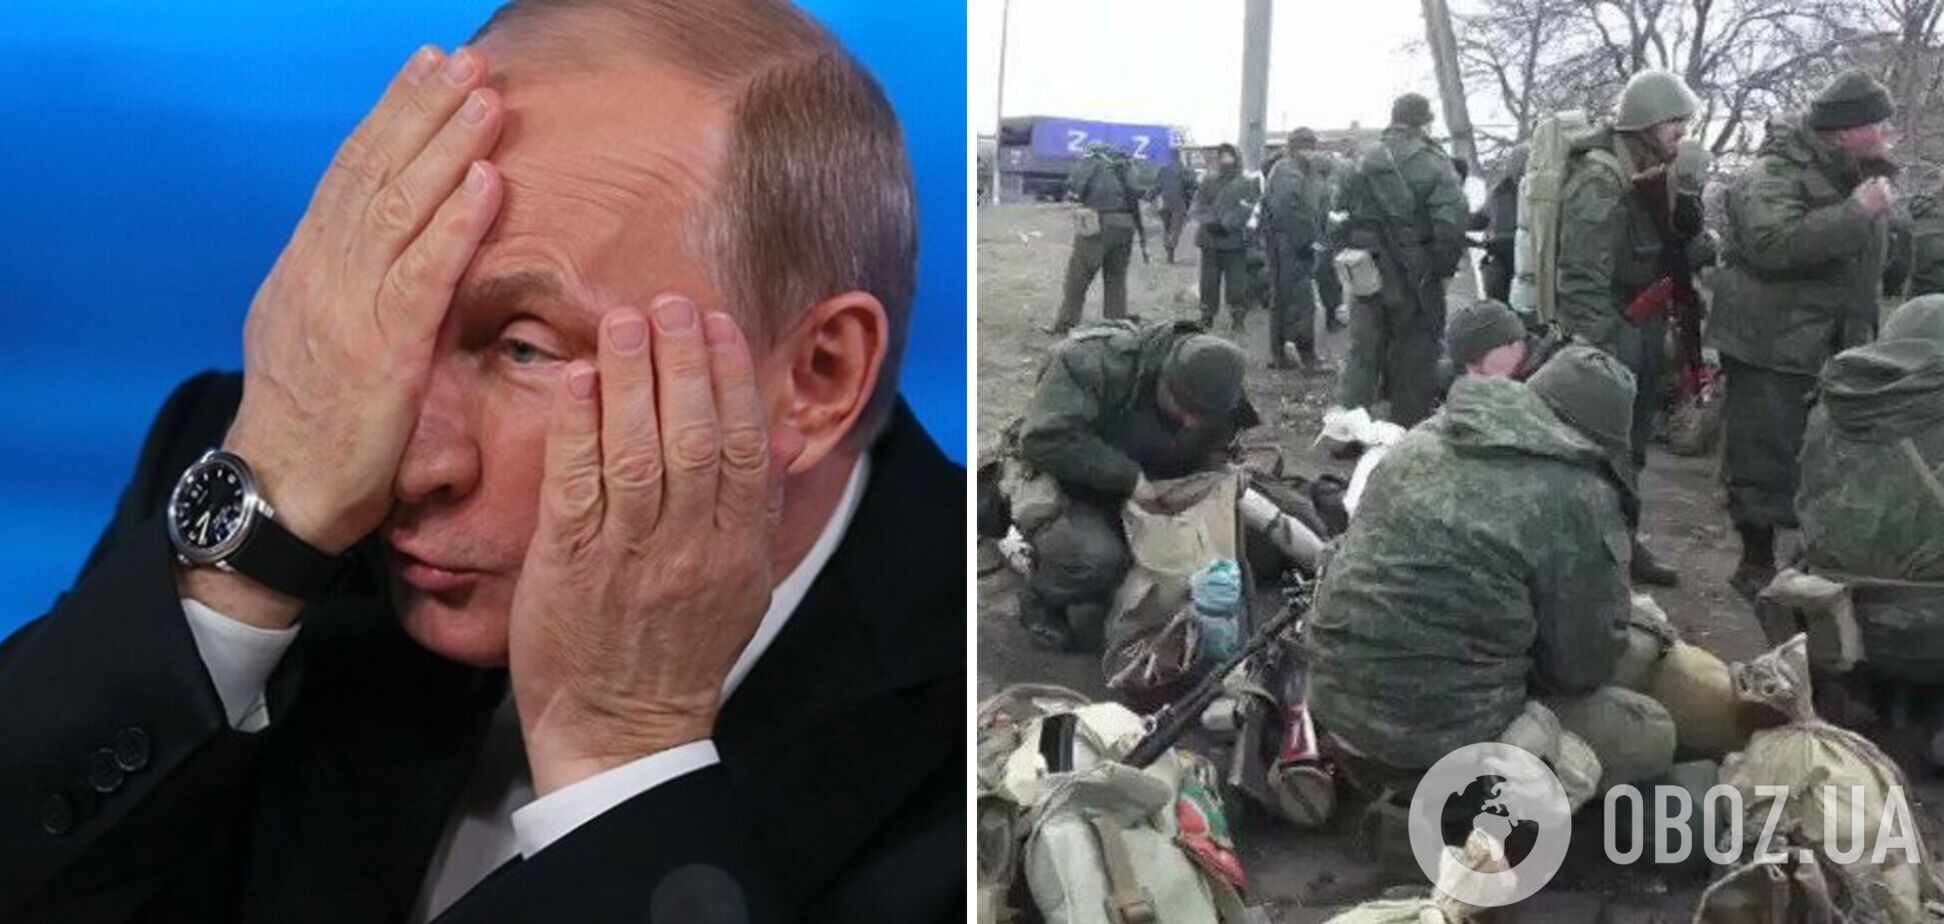 Дело запахло крупным шухером: Путин стал рабом своей охранки